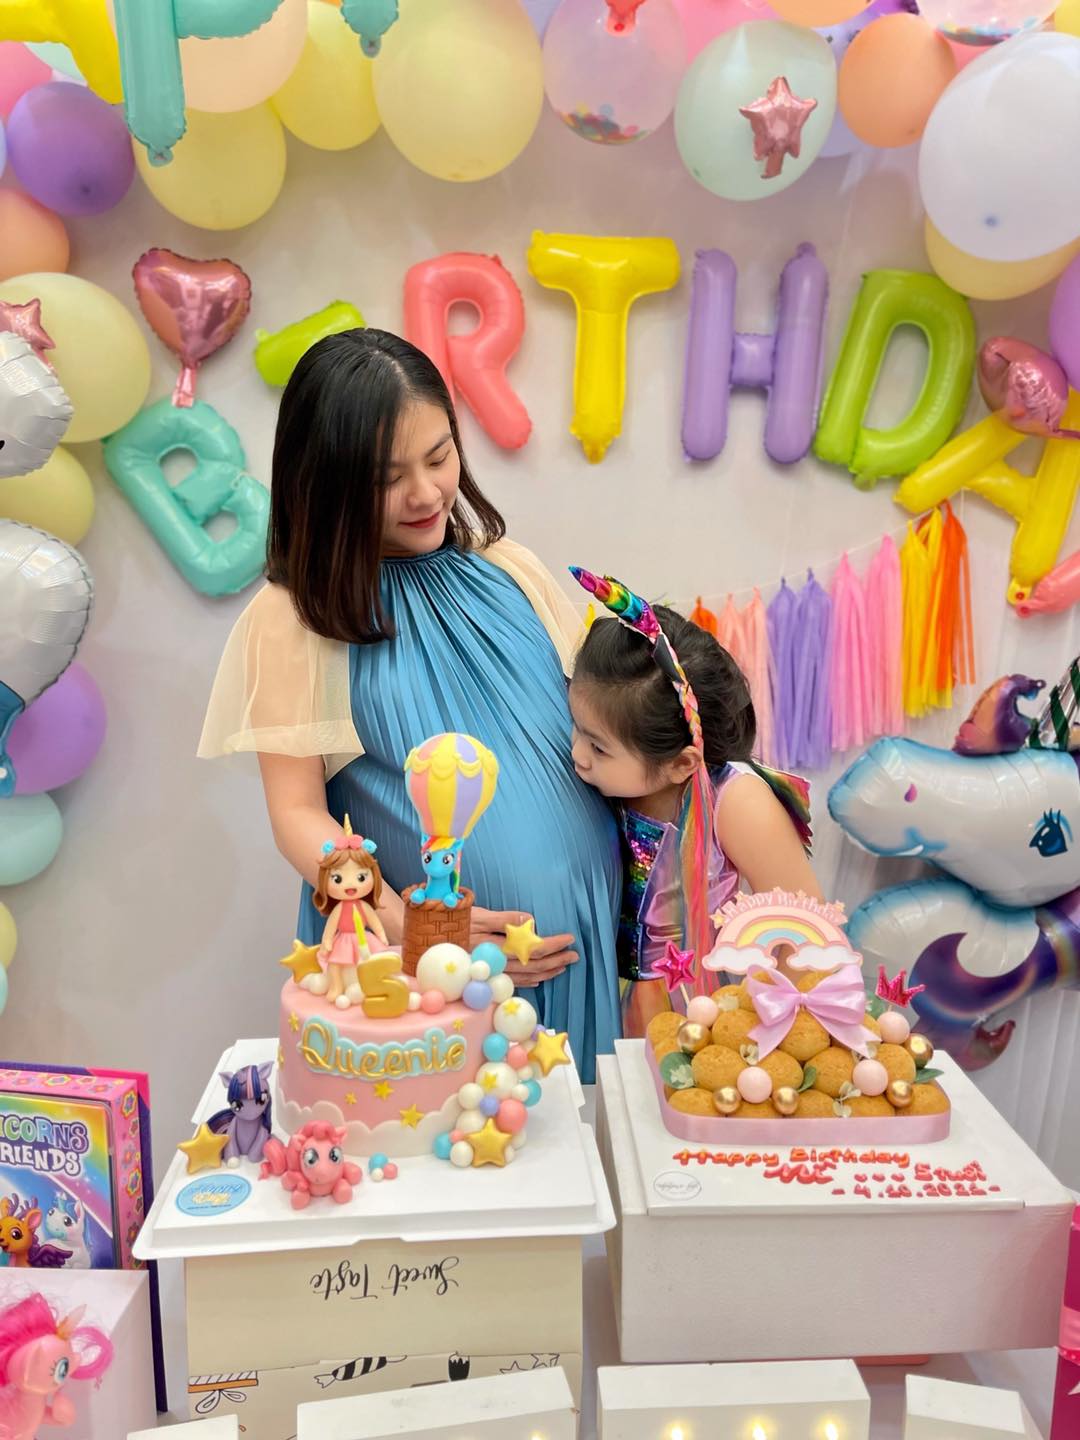 Vân Trang làm sinh nhật tại gia cho con gái 5 tuổi đẹp như ở nhà hàng - Ảnh 3